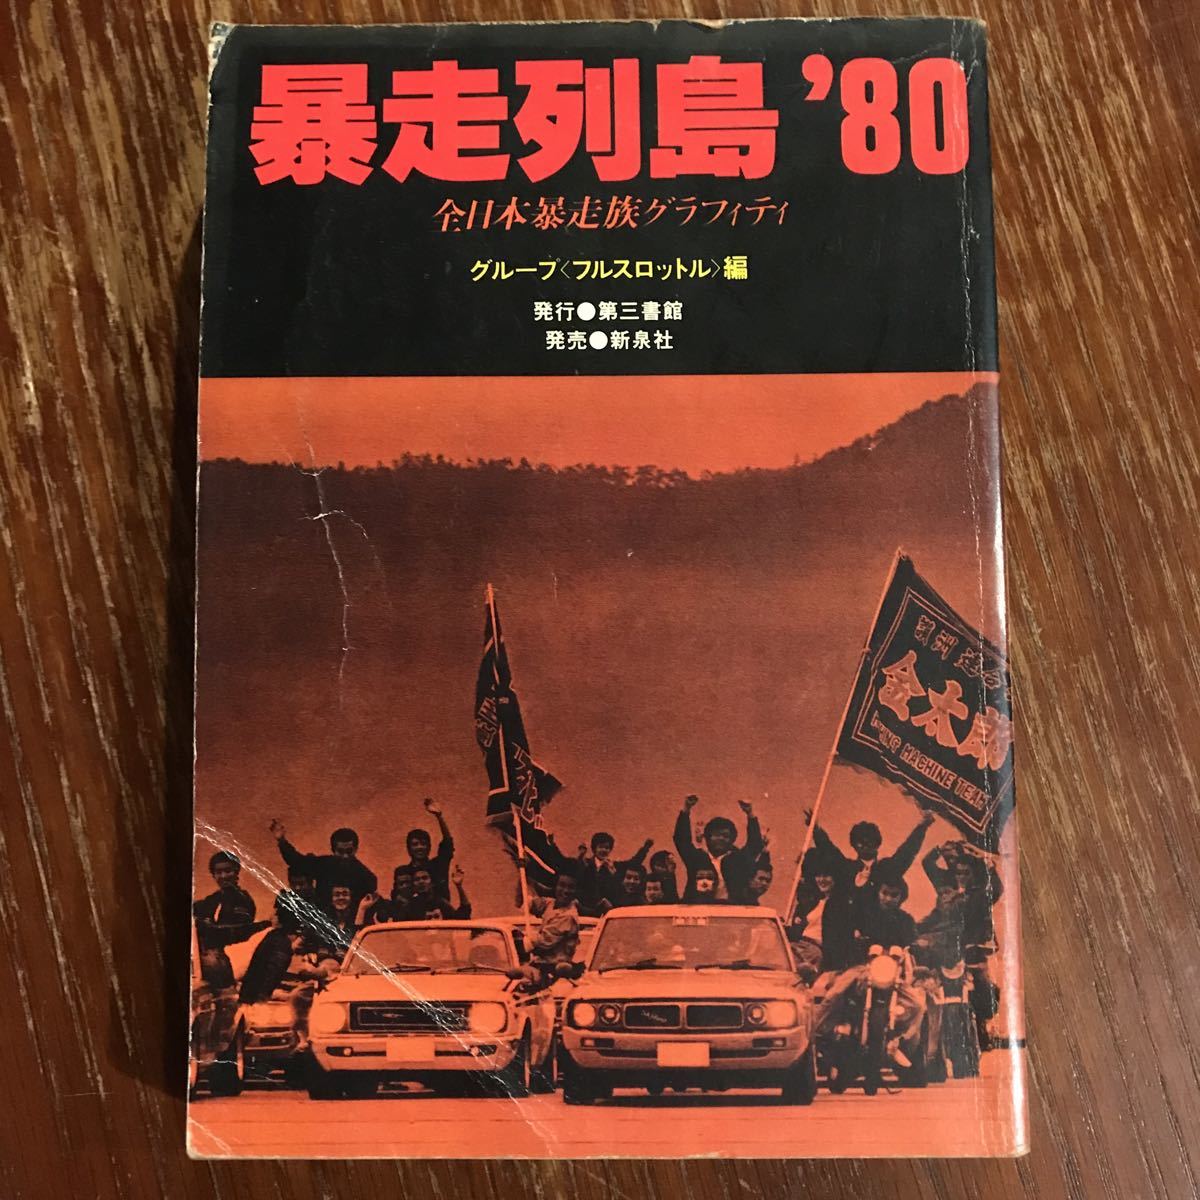 「暴走列島80 全日本暴走族グラフィティ」（1980年、第三書館）初版第三刷　ブラックエンペラー、スペクター、関東連合_画像1